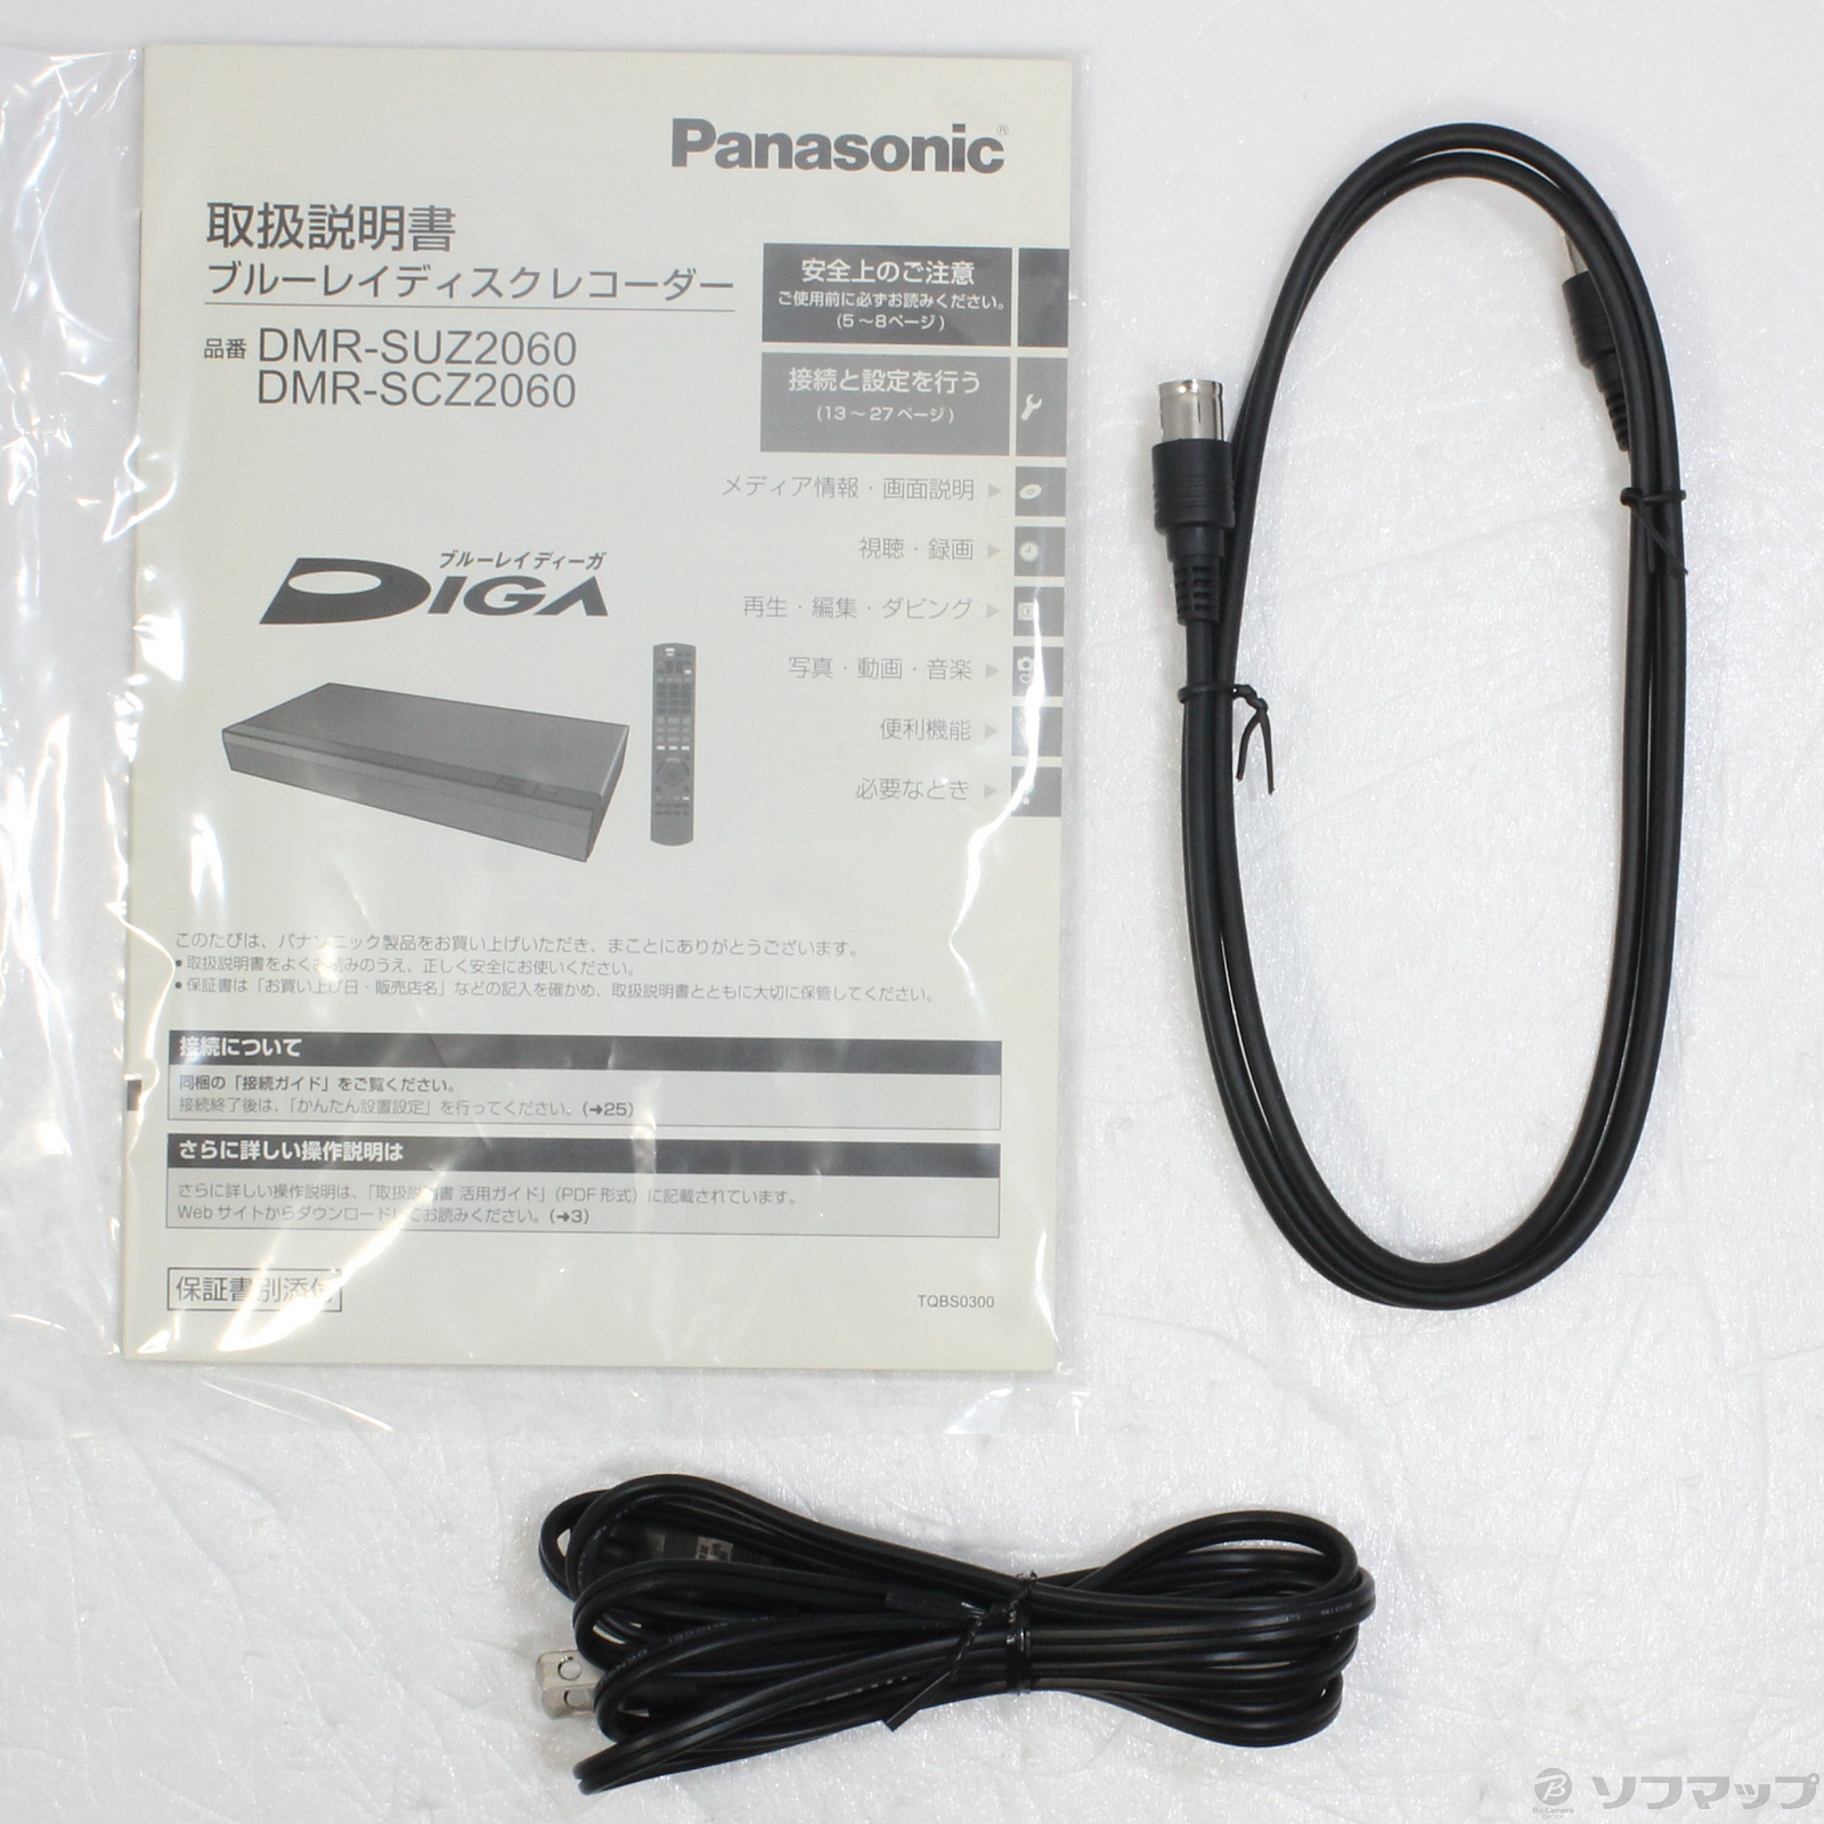 取扱い説明書 Panasonicブルーレイレコーダー DMRシリーズ - レコーダー